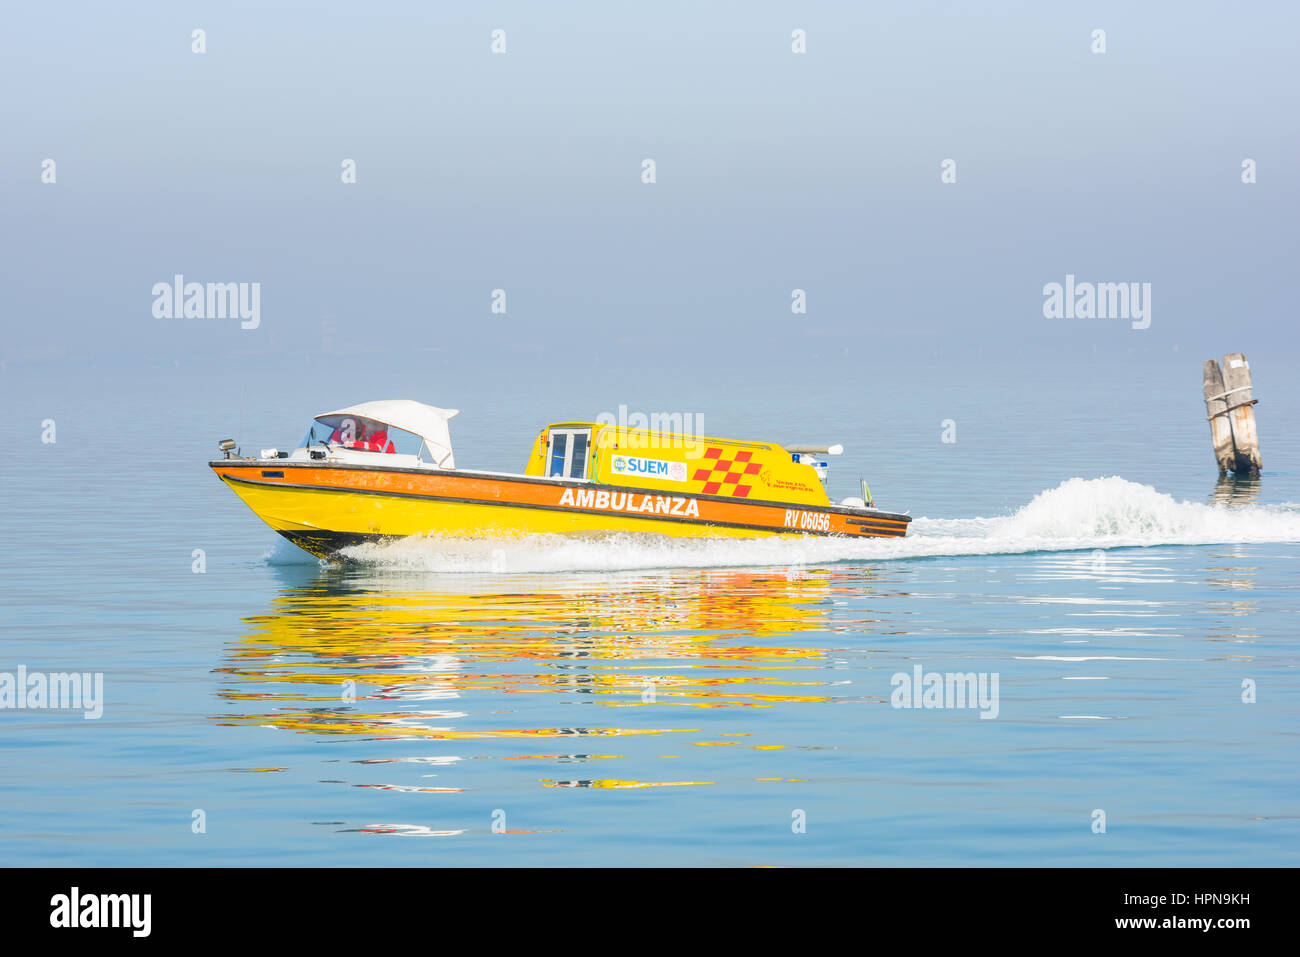 Una ambulancia de agua es visto viajando entre las islas frente a la costa de Venecia, Italia Foto de stock